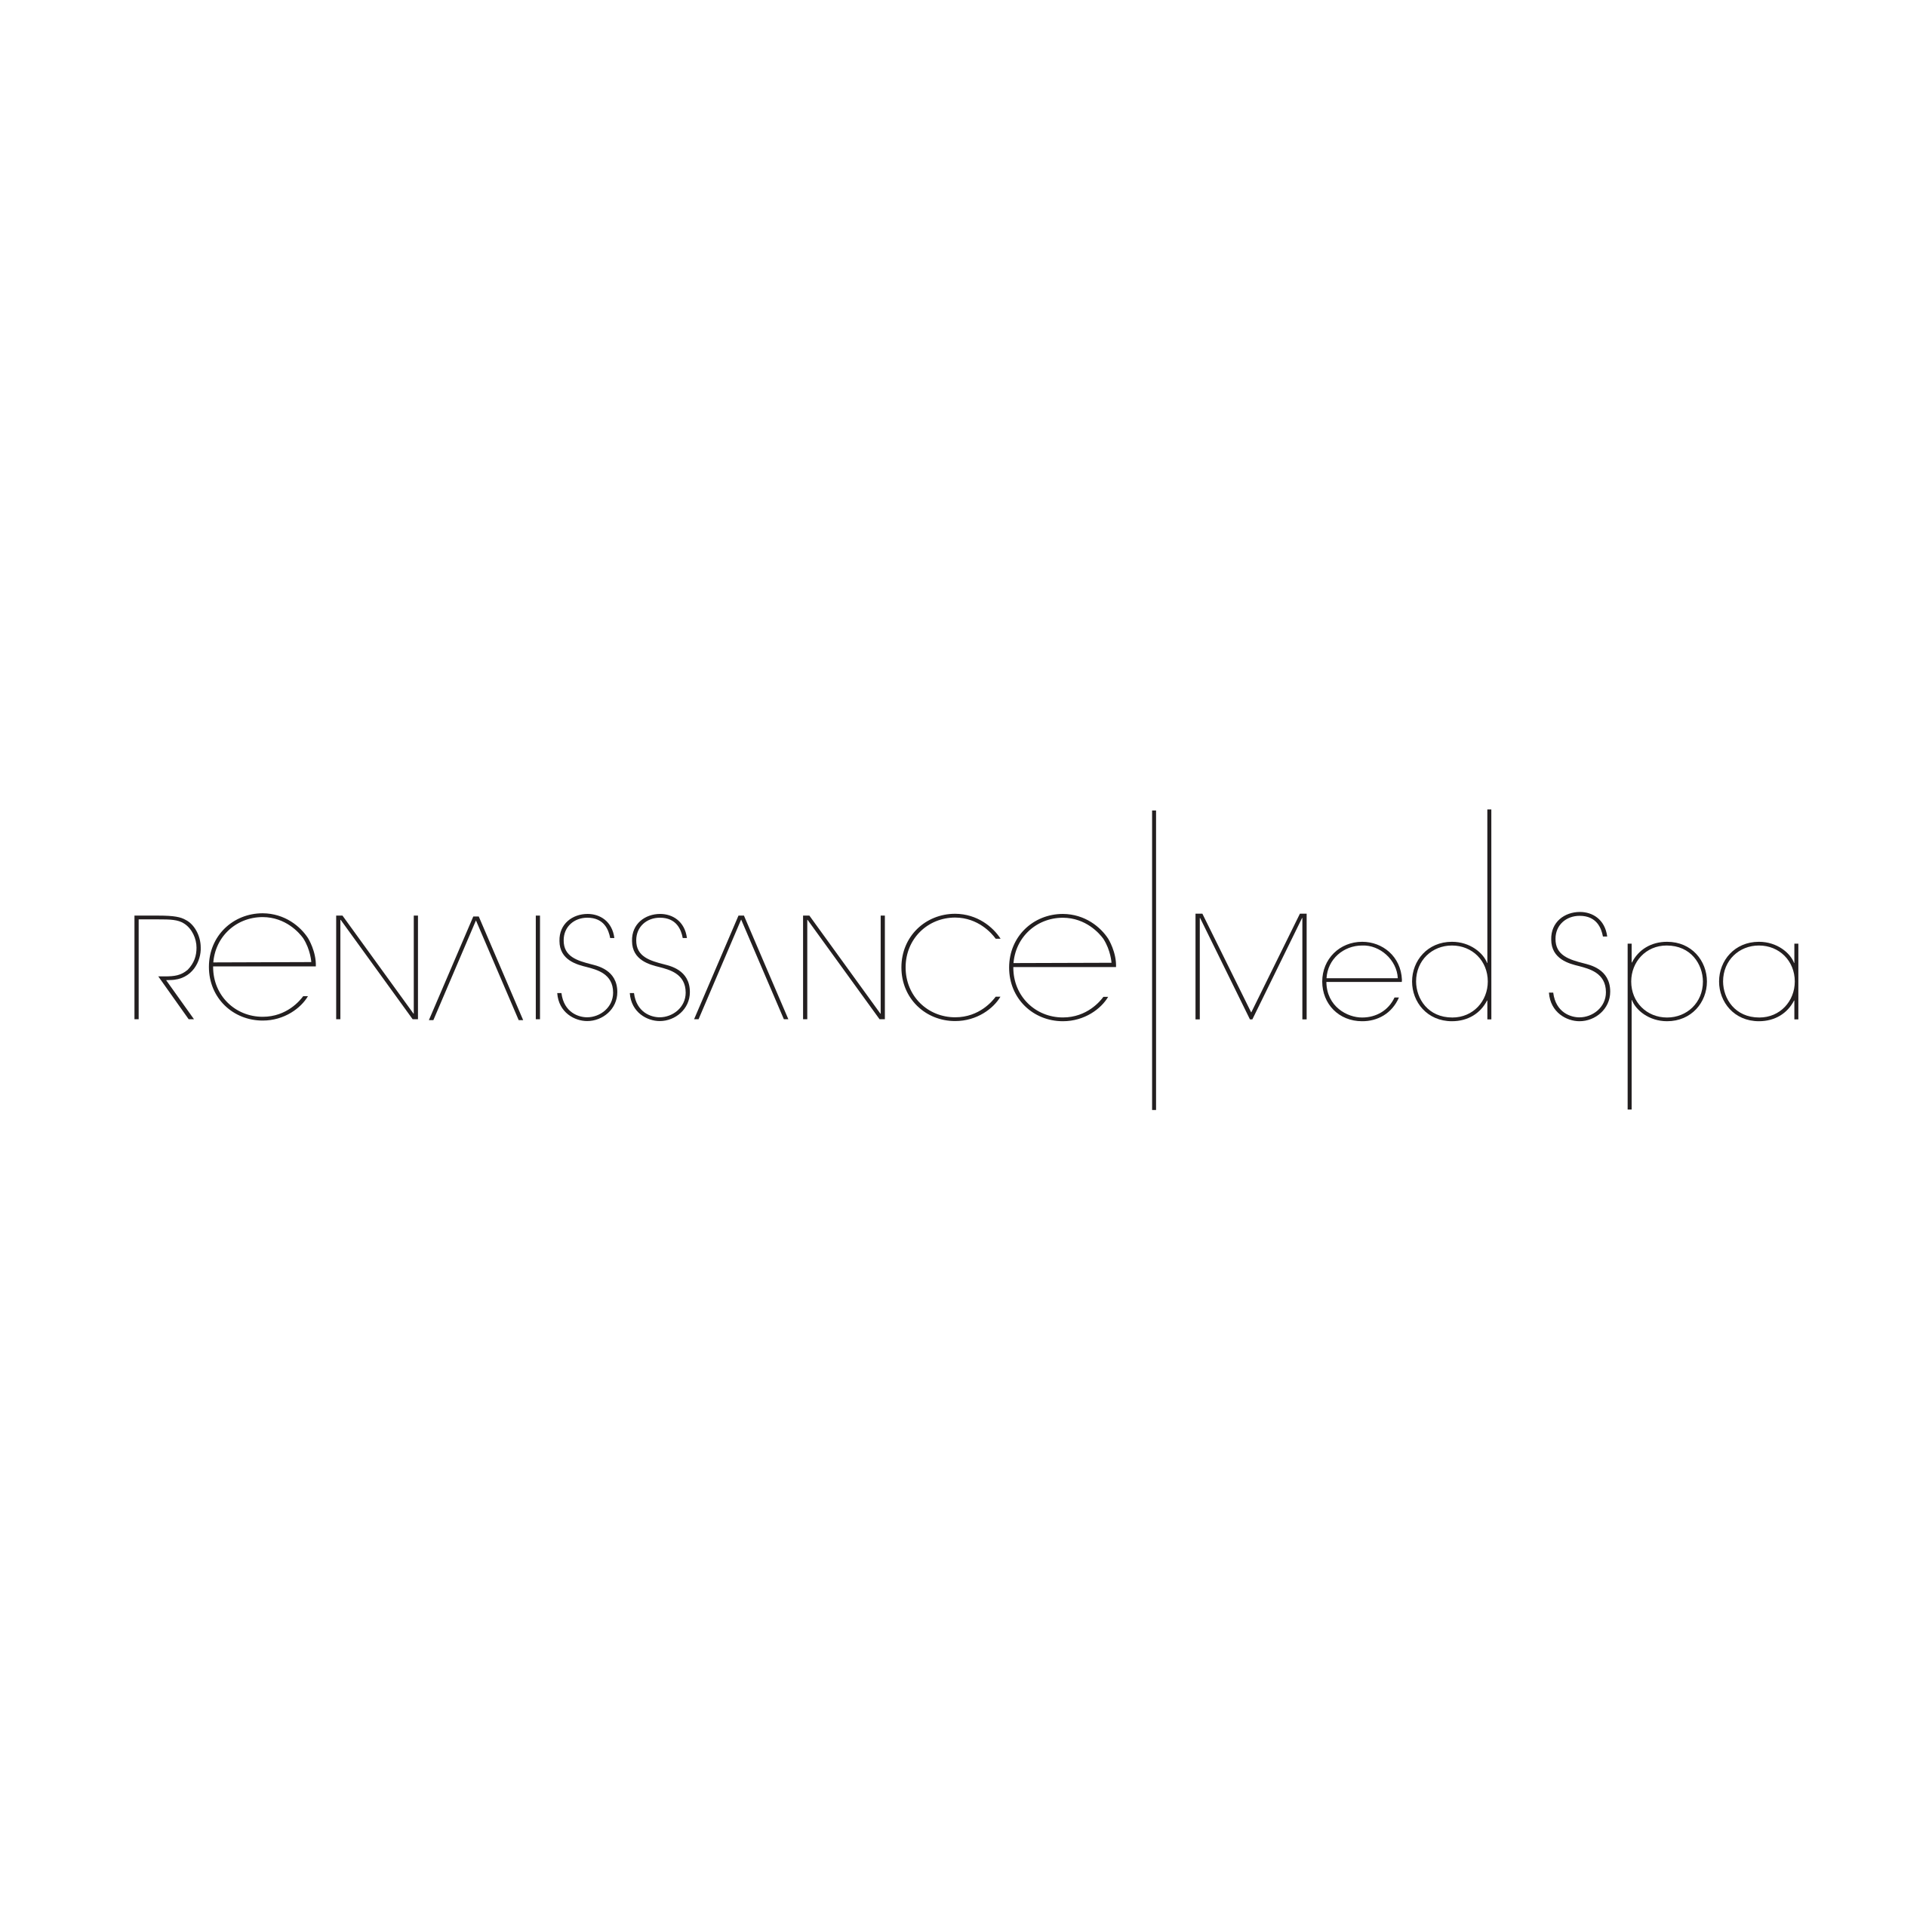 Renaissance Med Spa Logo